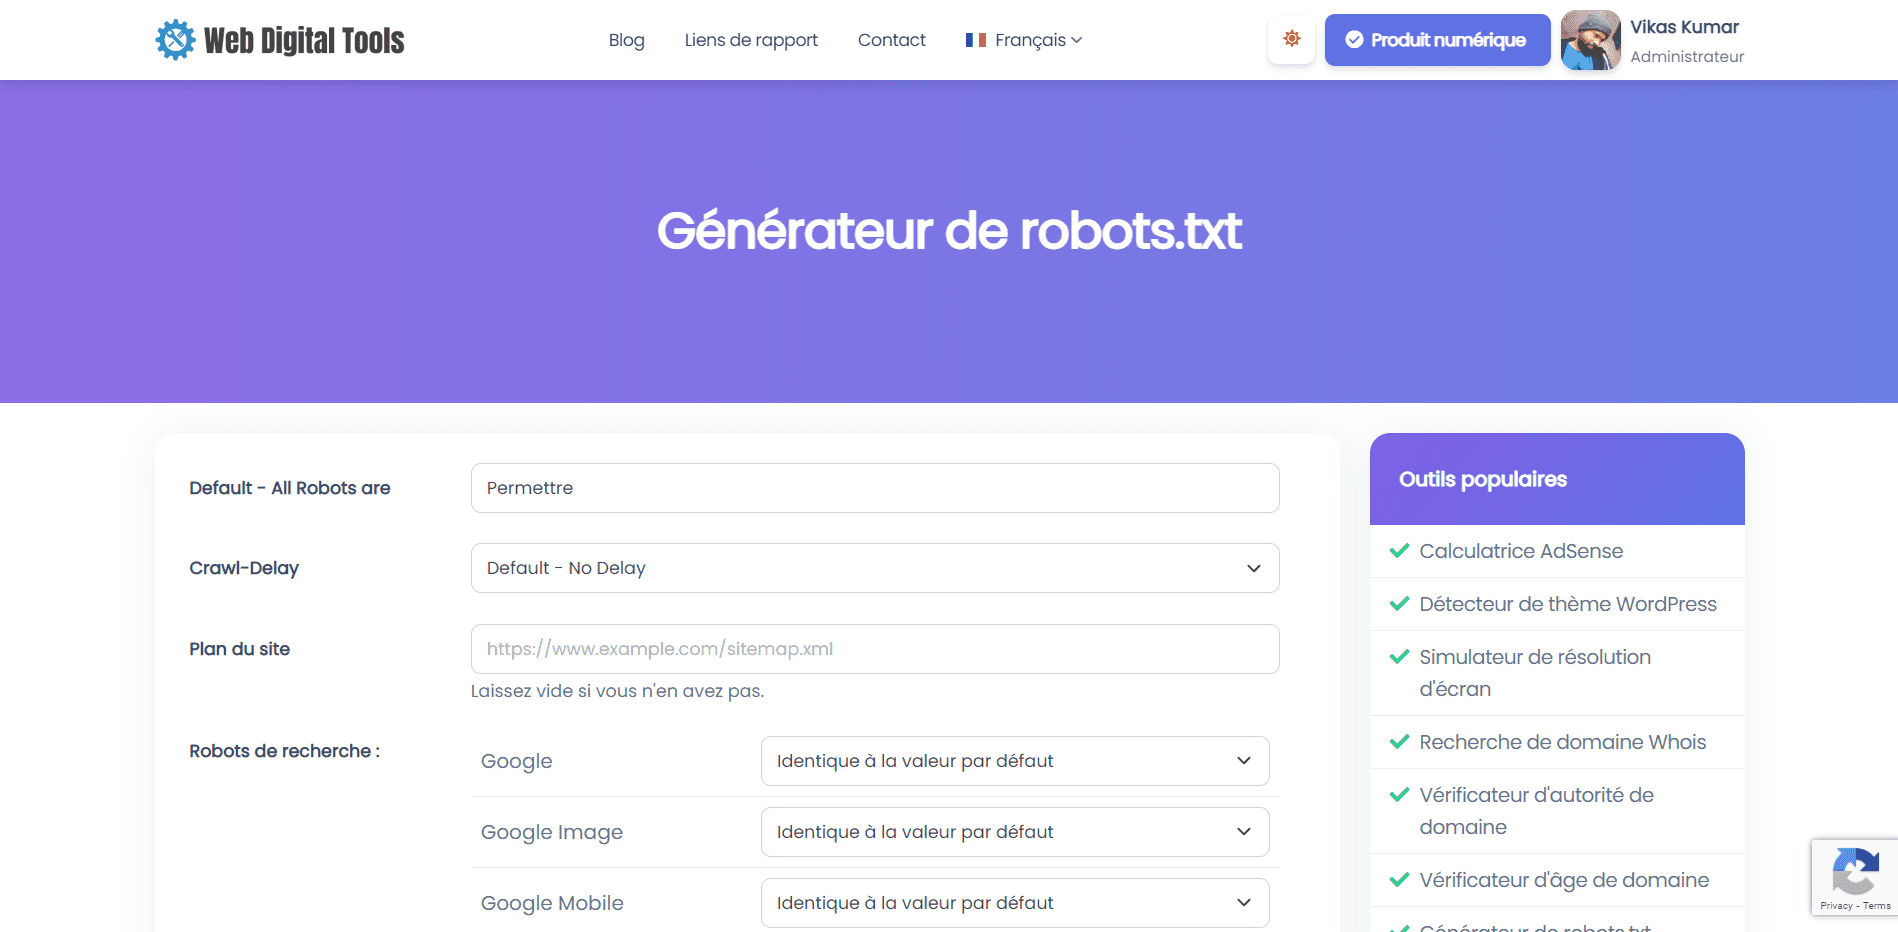 Générateur de robots.txt